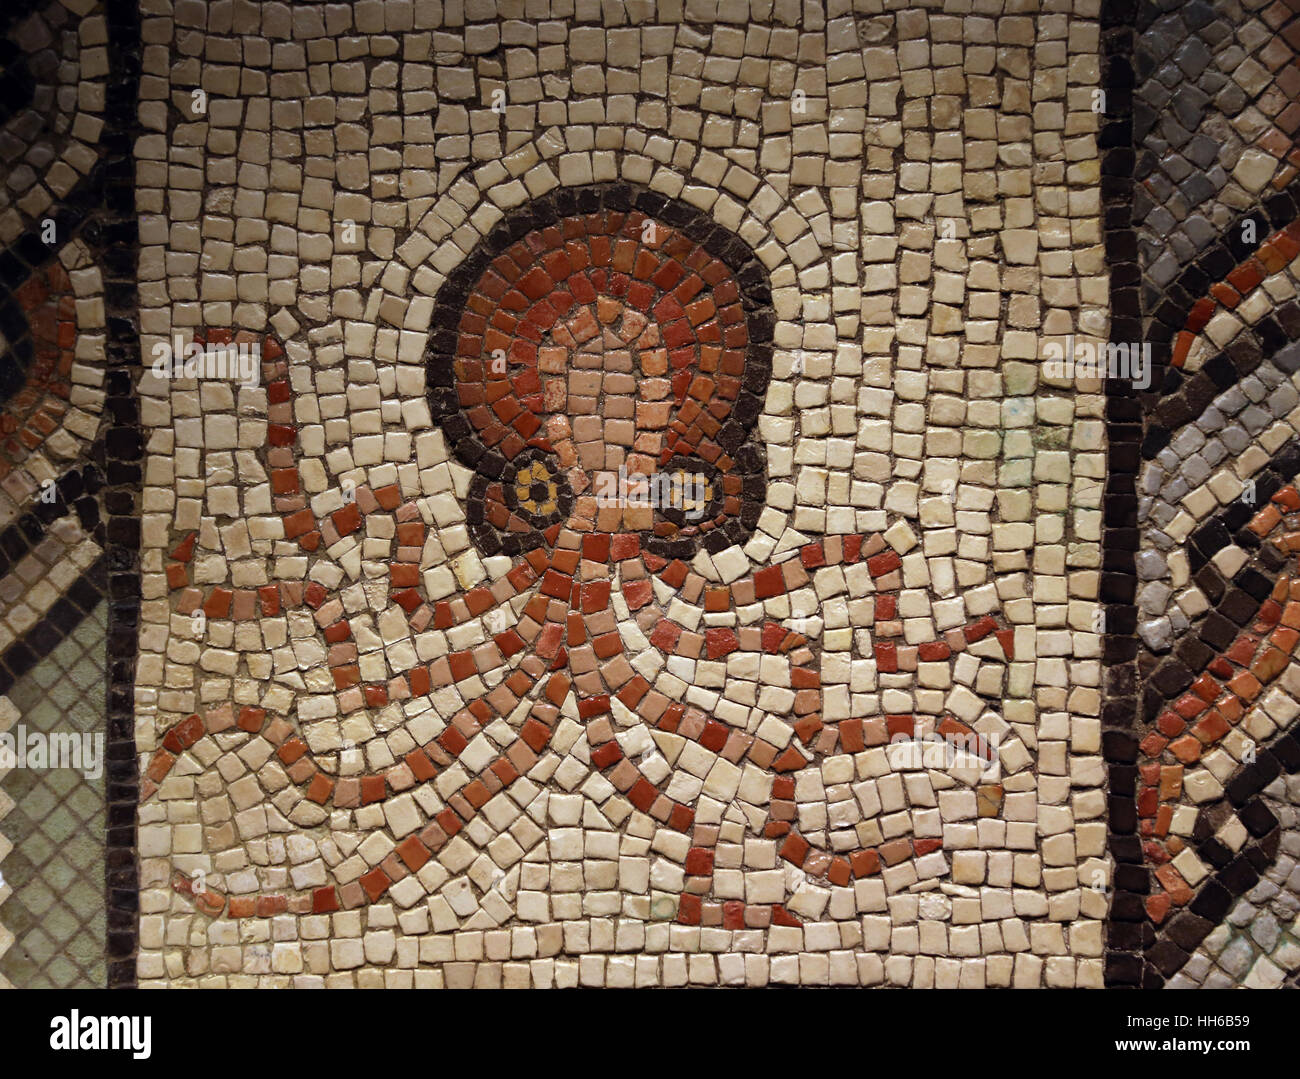 Mosaïque avec octopus. La pierre calcaire. 2ème-3ème siècle. Villaquejida, Leon. L'Espagne. Musée Archéologique National, Madrid. L'Espagne. Banque D'Images